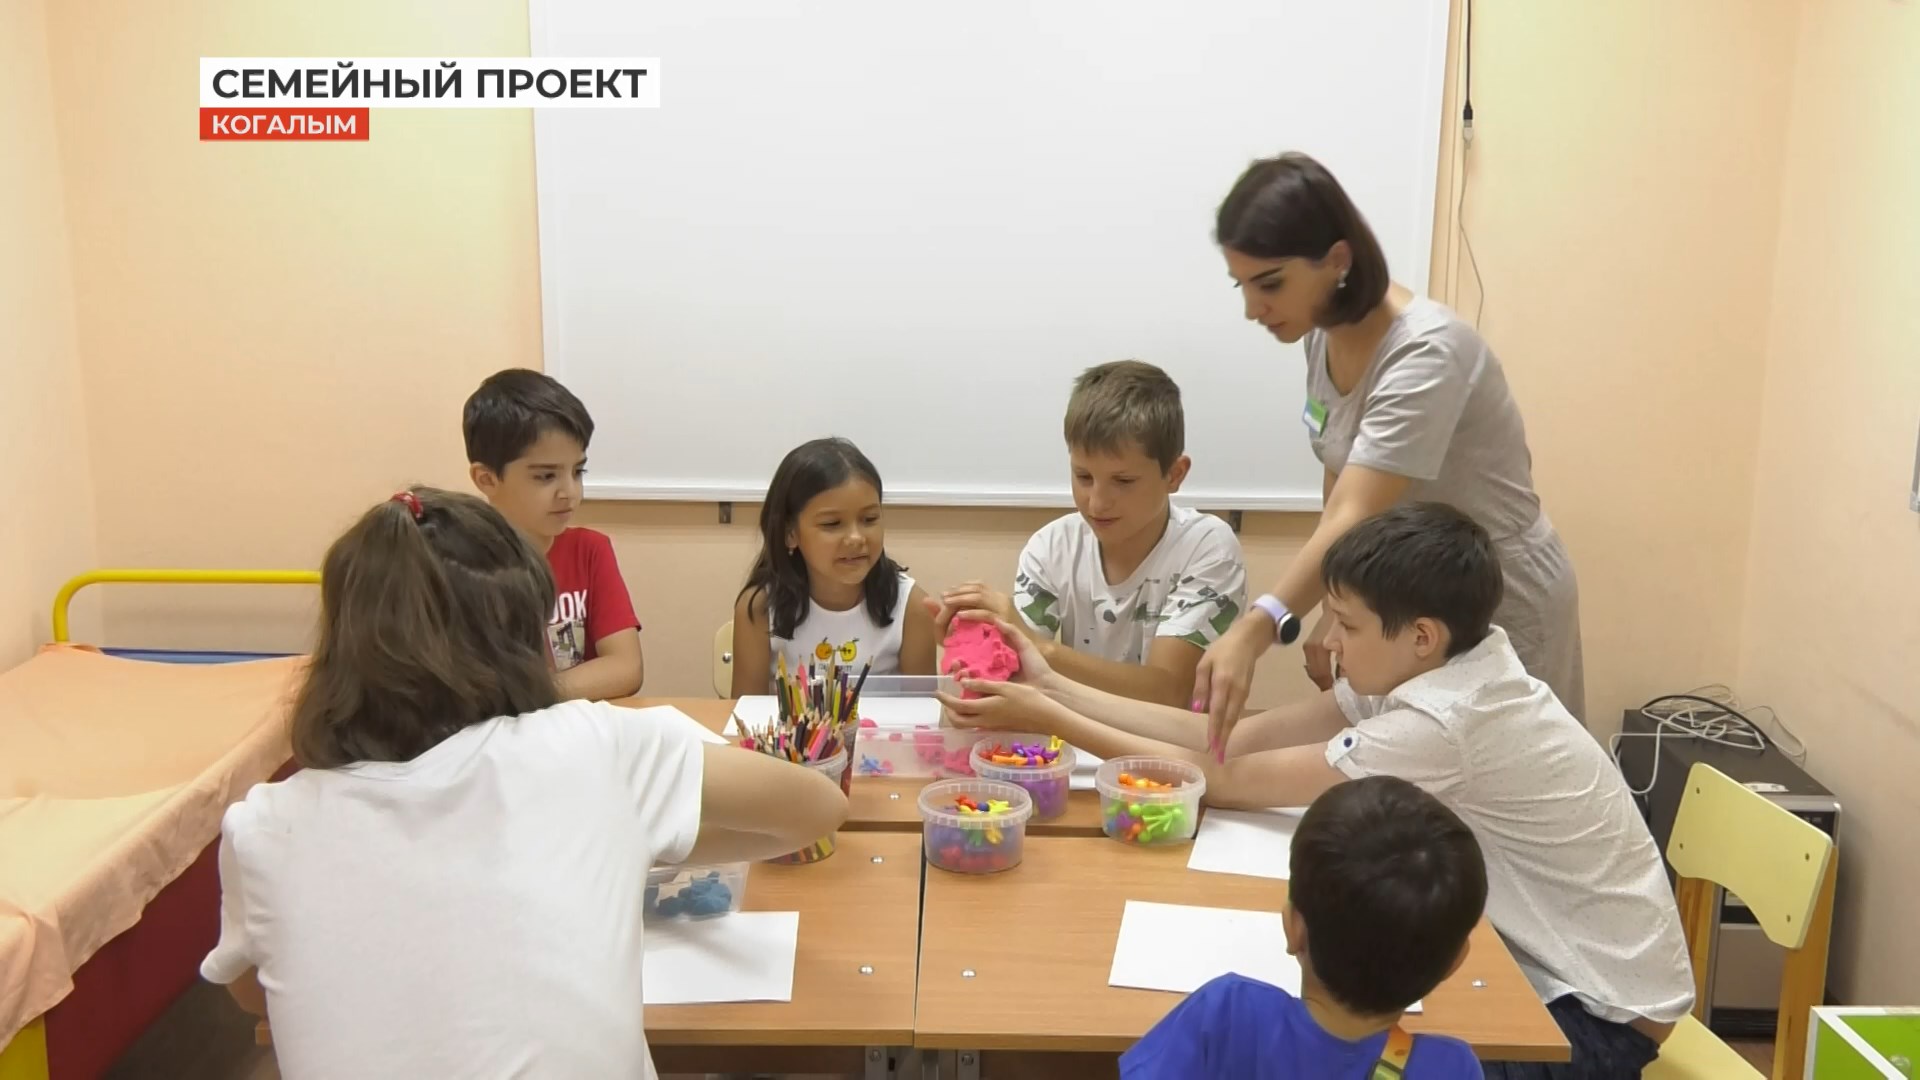 Социальный проект по поддержке семьи реализуется в Когалыме